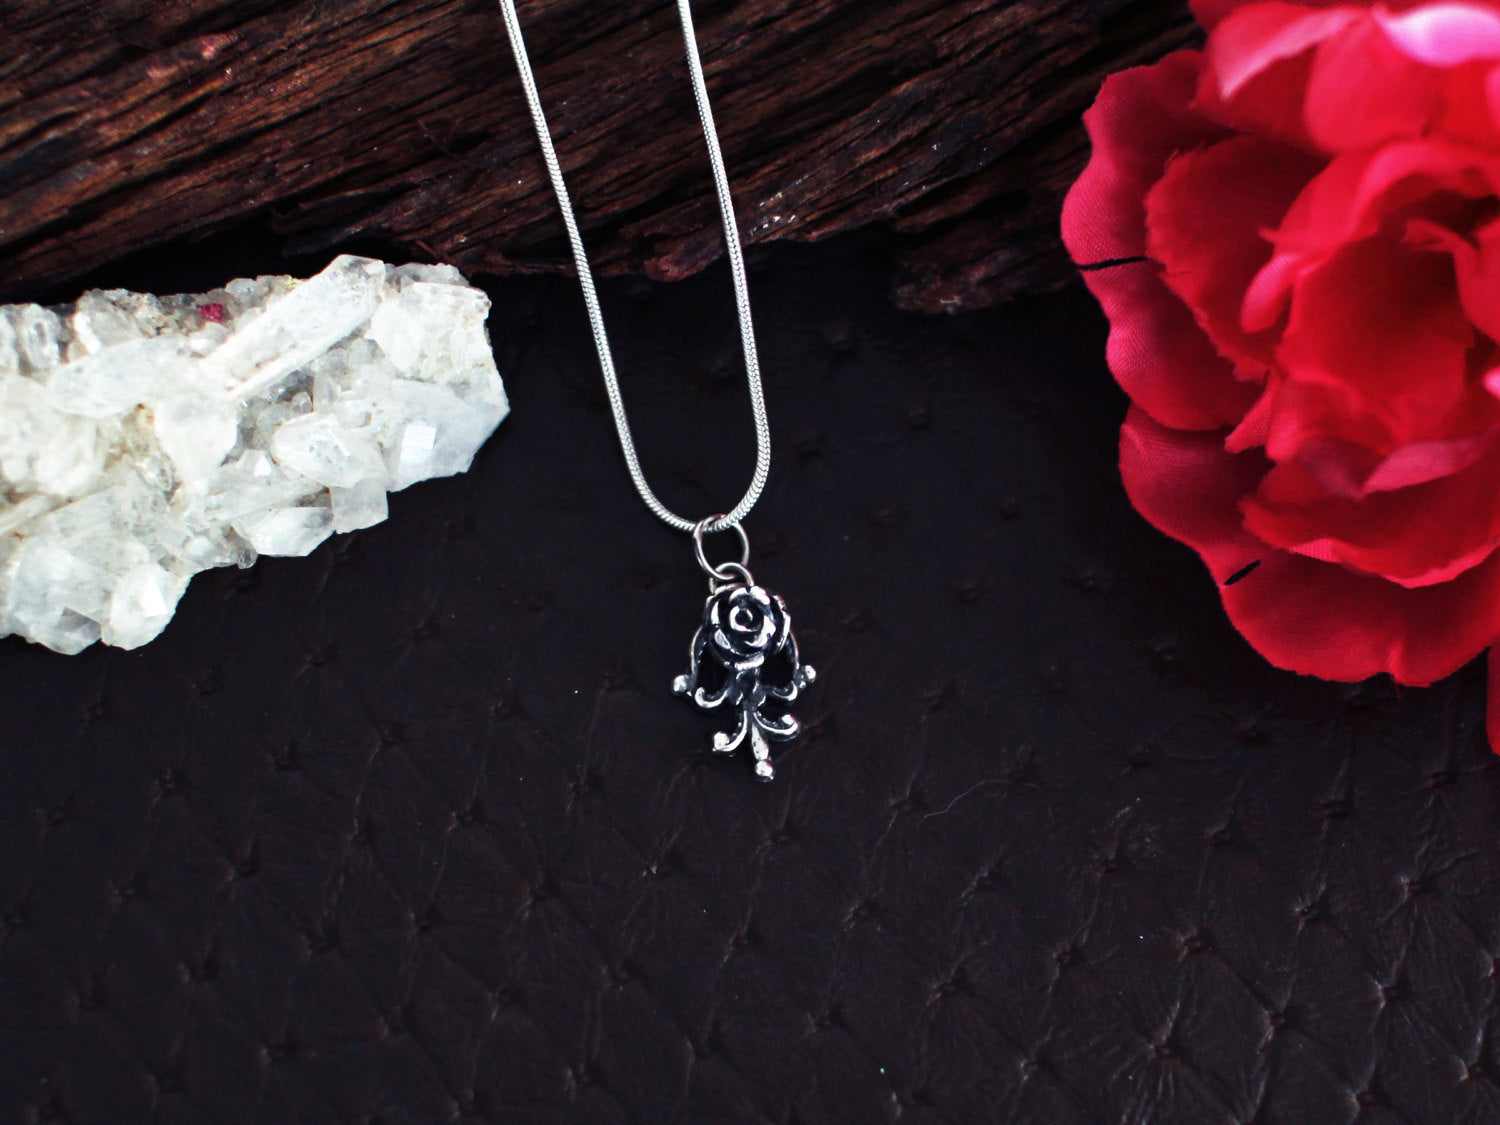 Tiny Silver Rose Pendant - Inchoo Bijoux